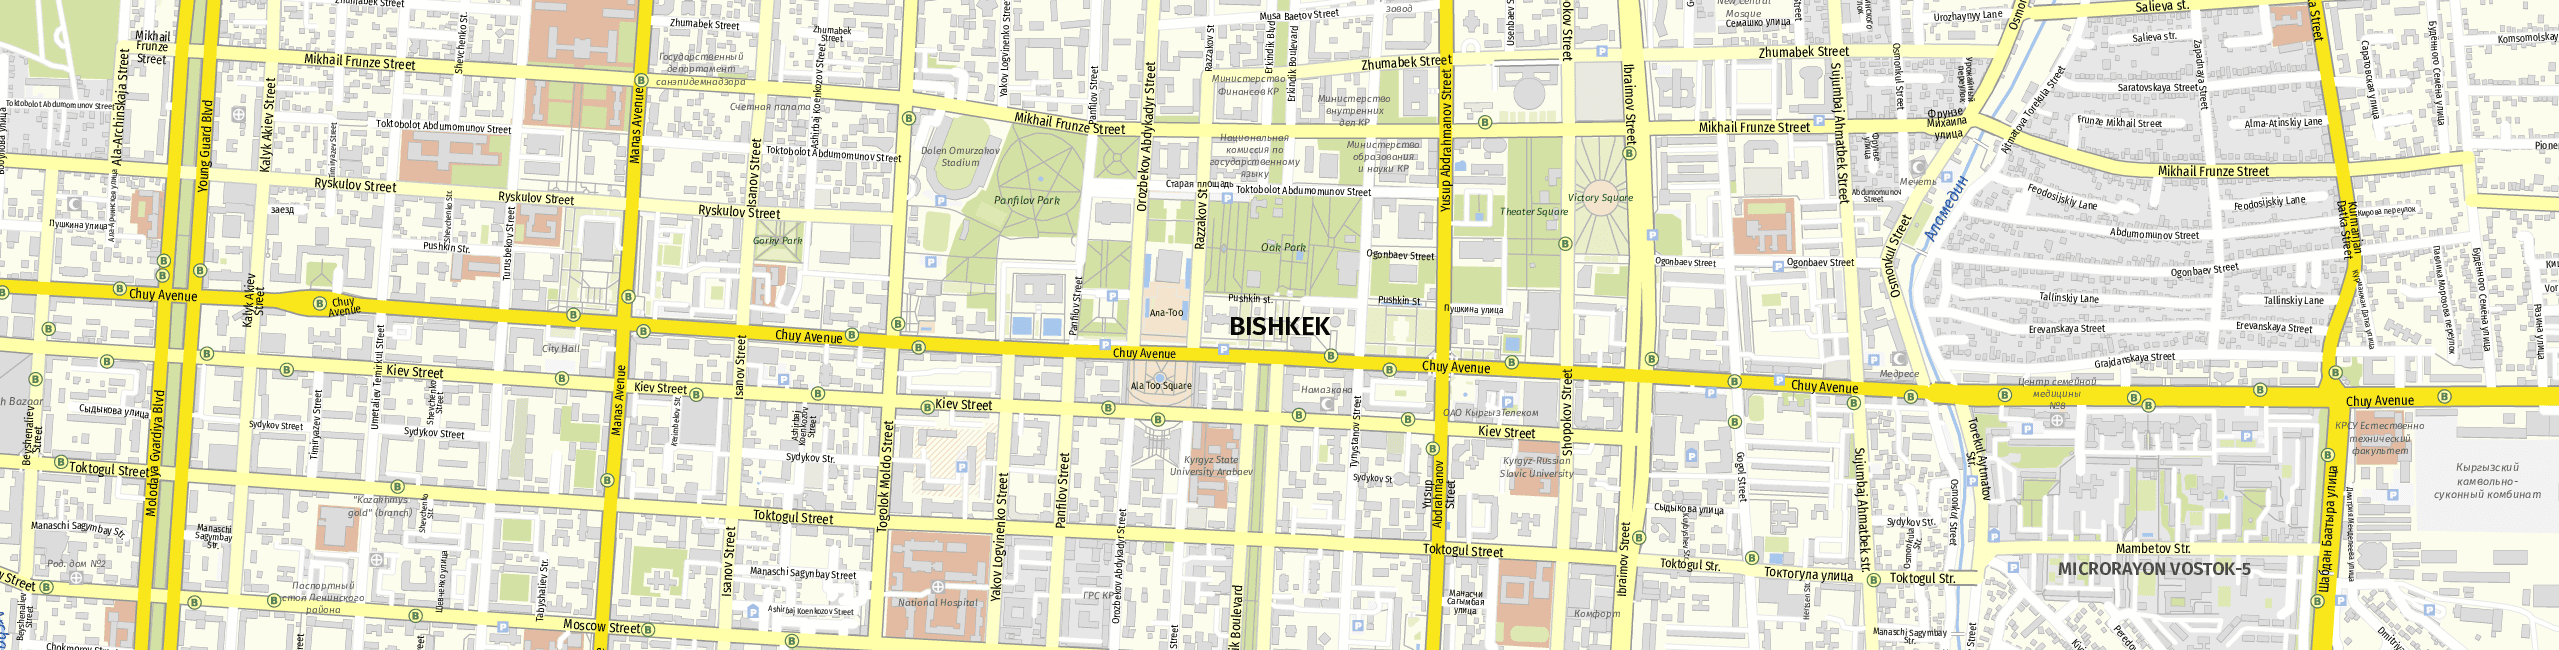 Stadtplan Bishkek zum Downloaden.